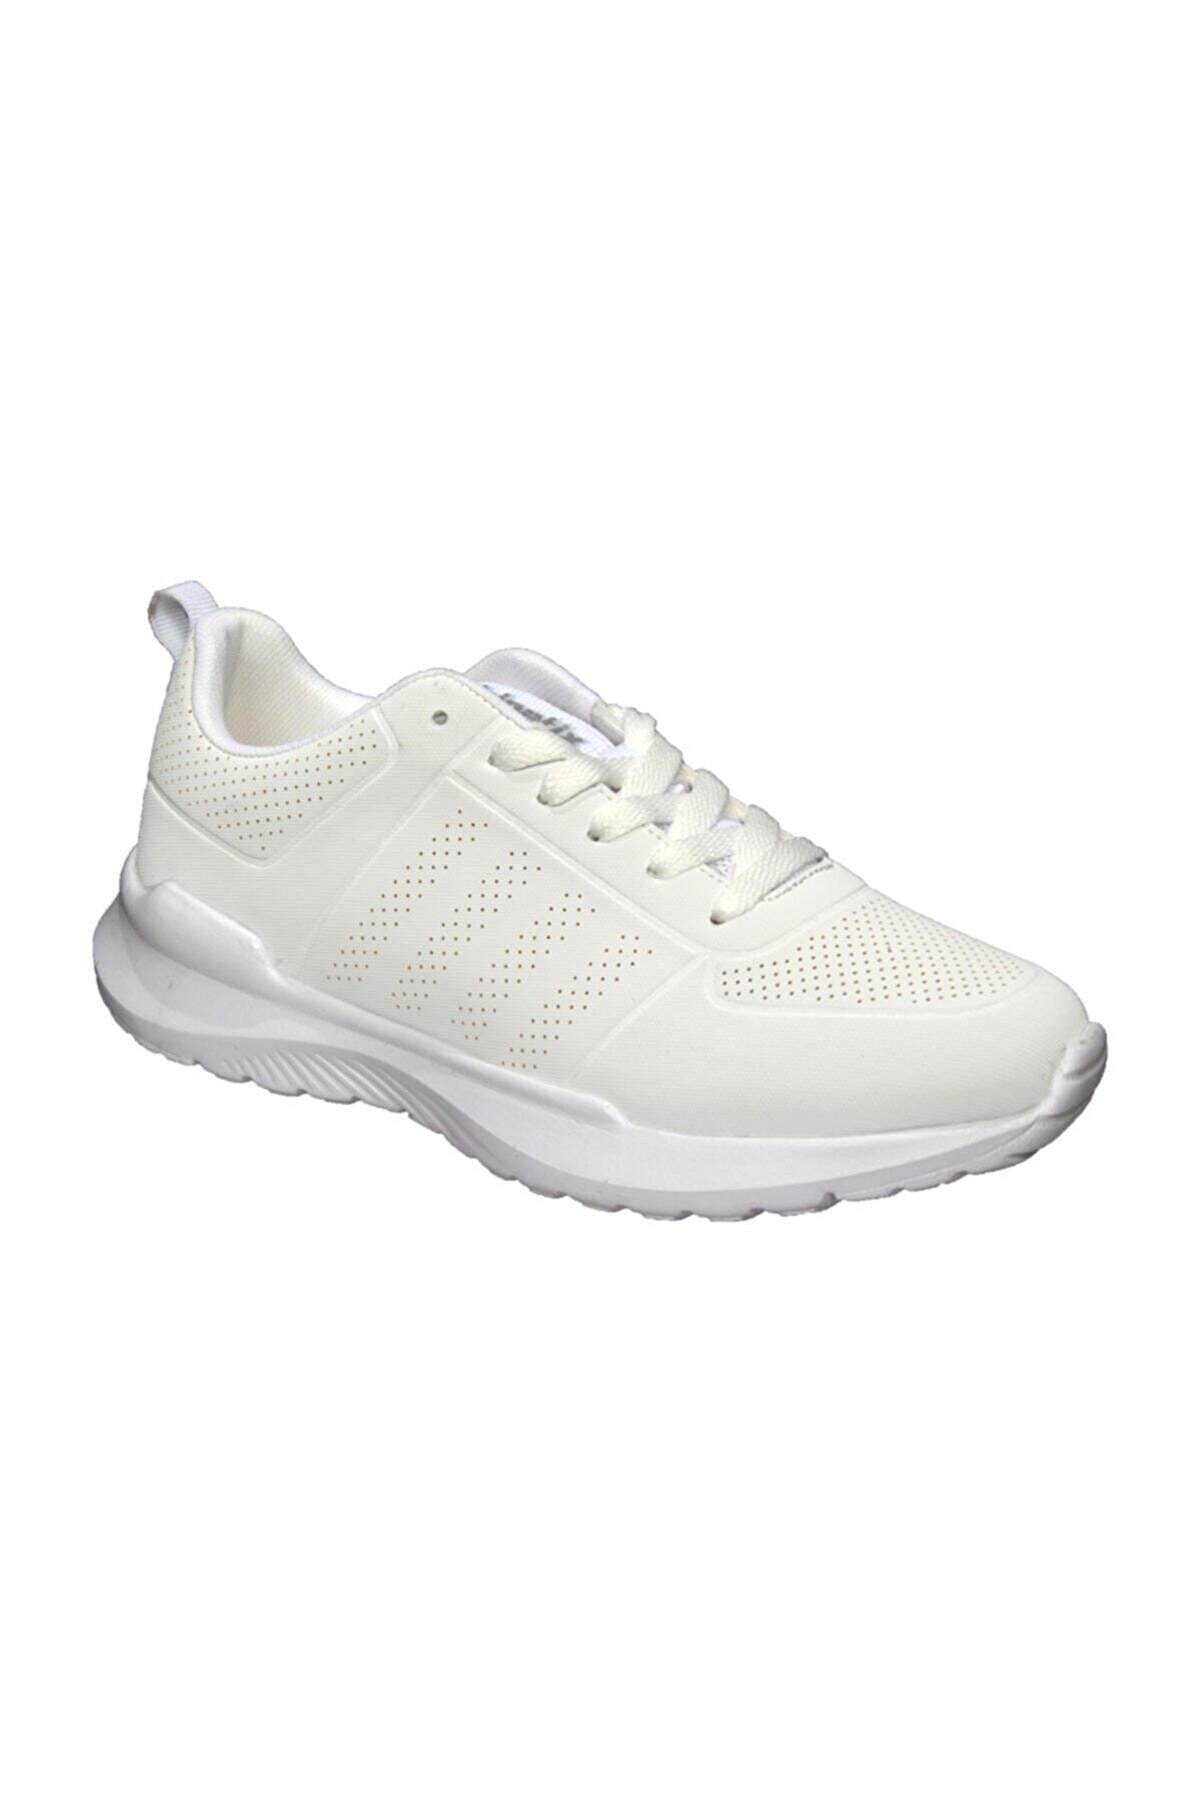 Kinetix ODAN PU W Beyaz Kadın Sneaker Ayakkabı 100484196